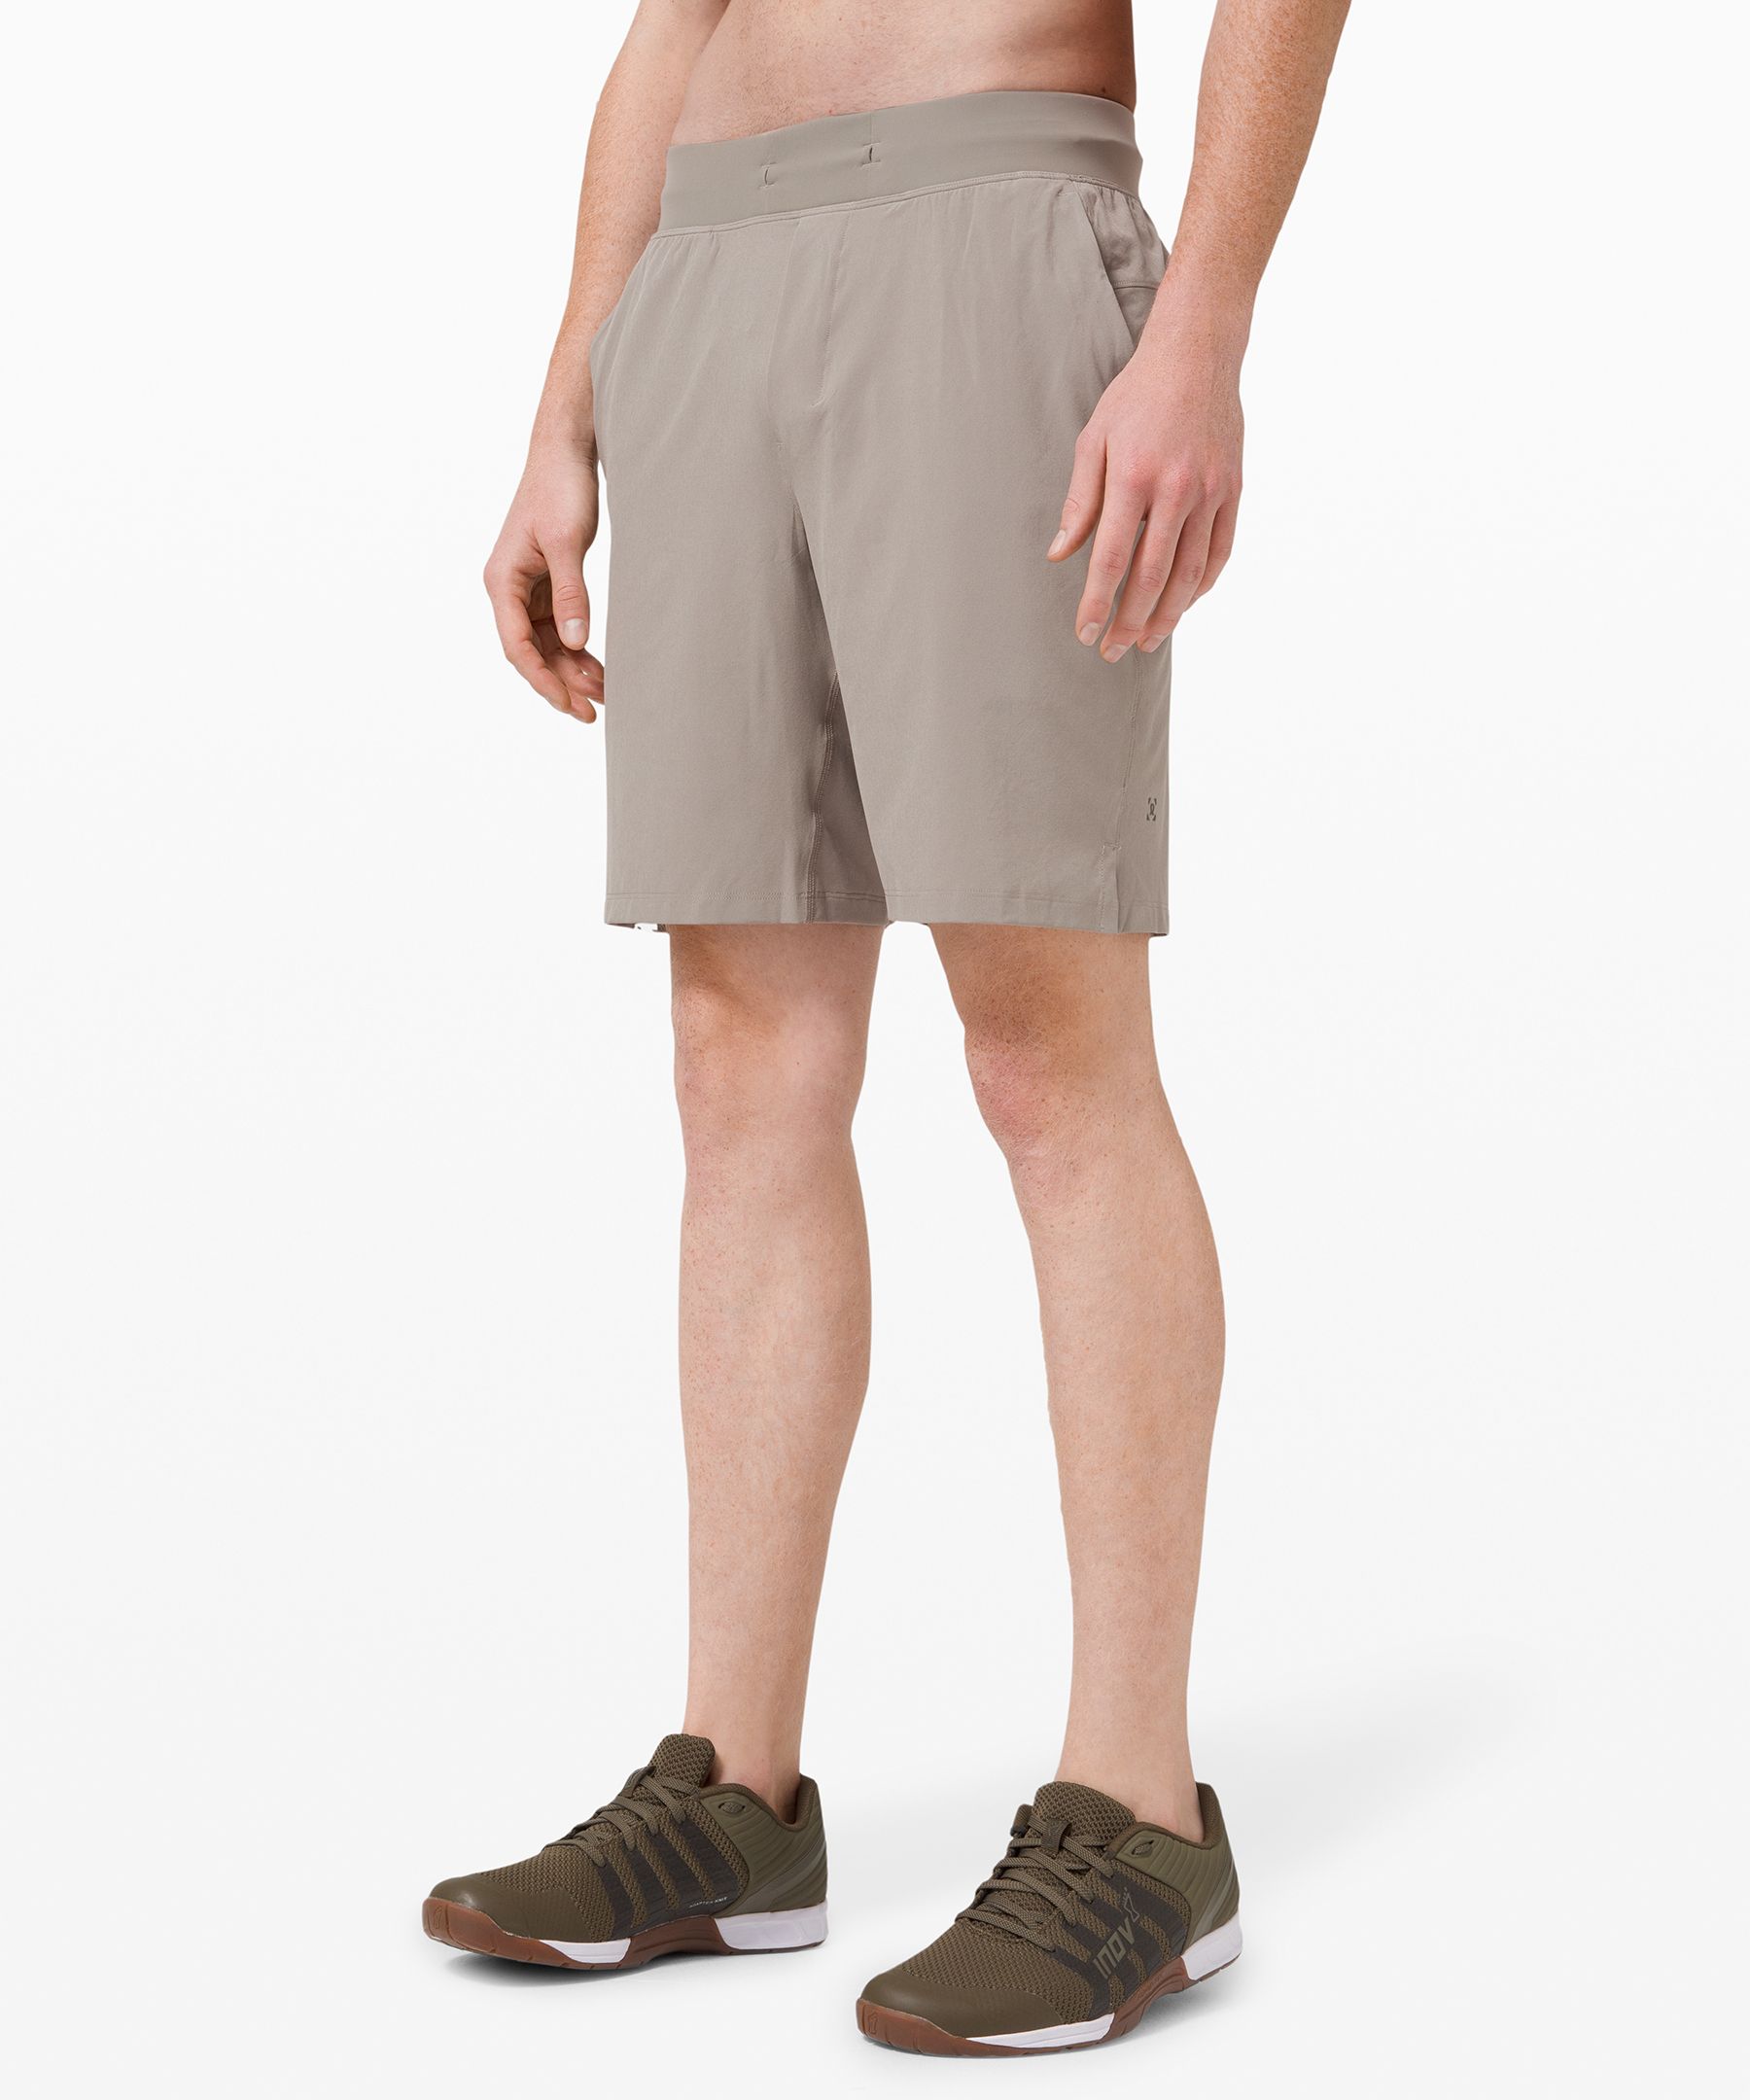 lululemon mens athletic shorts